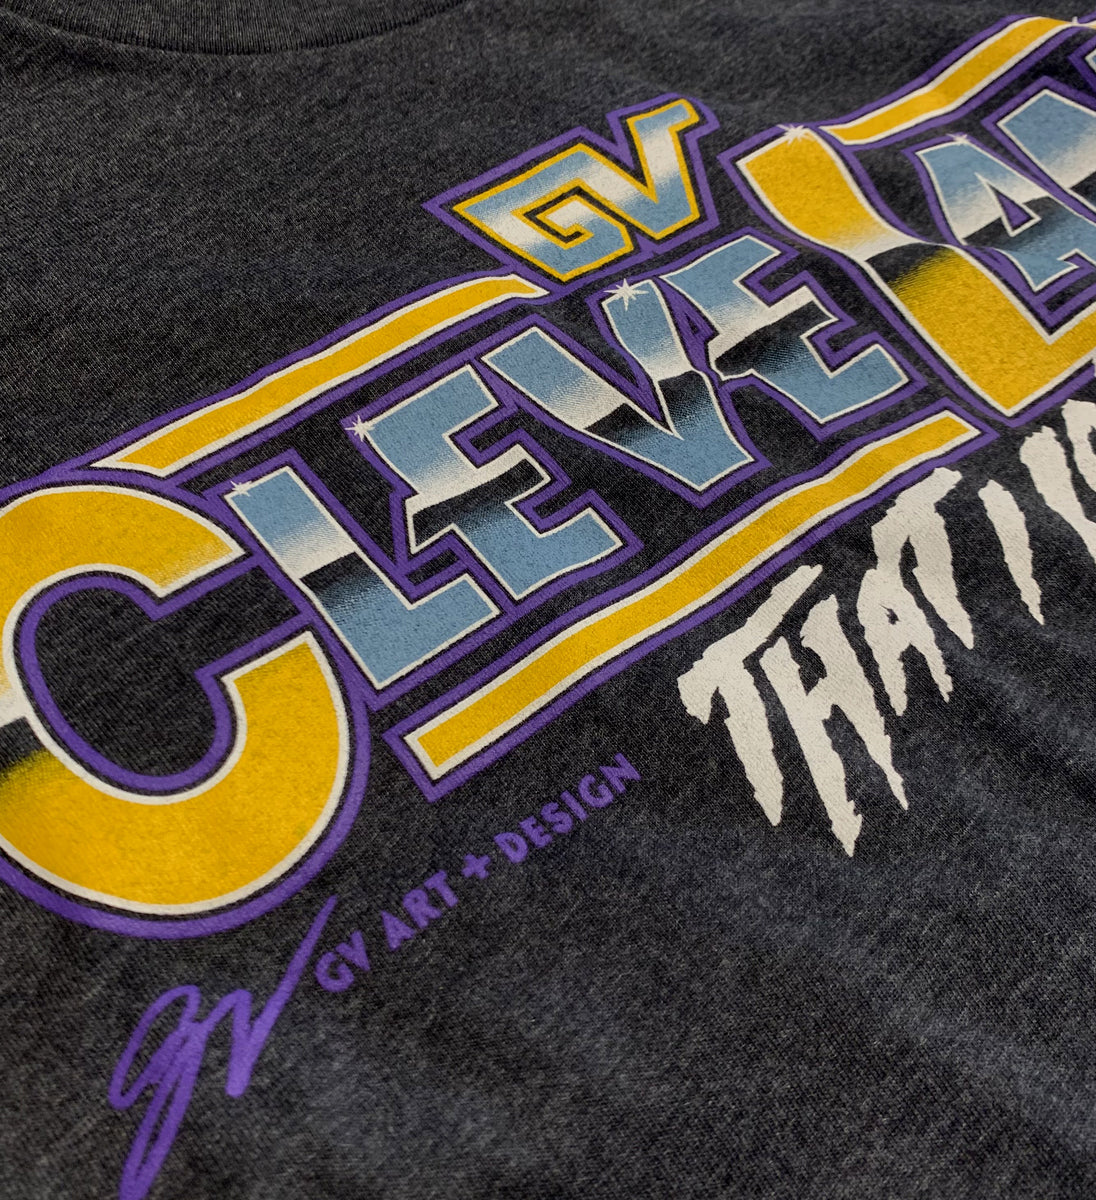 Cleveland Mania Tshirt